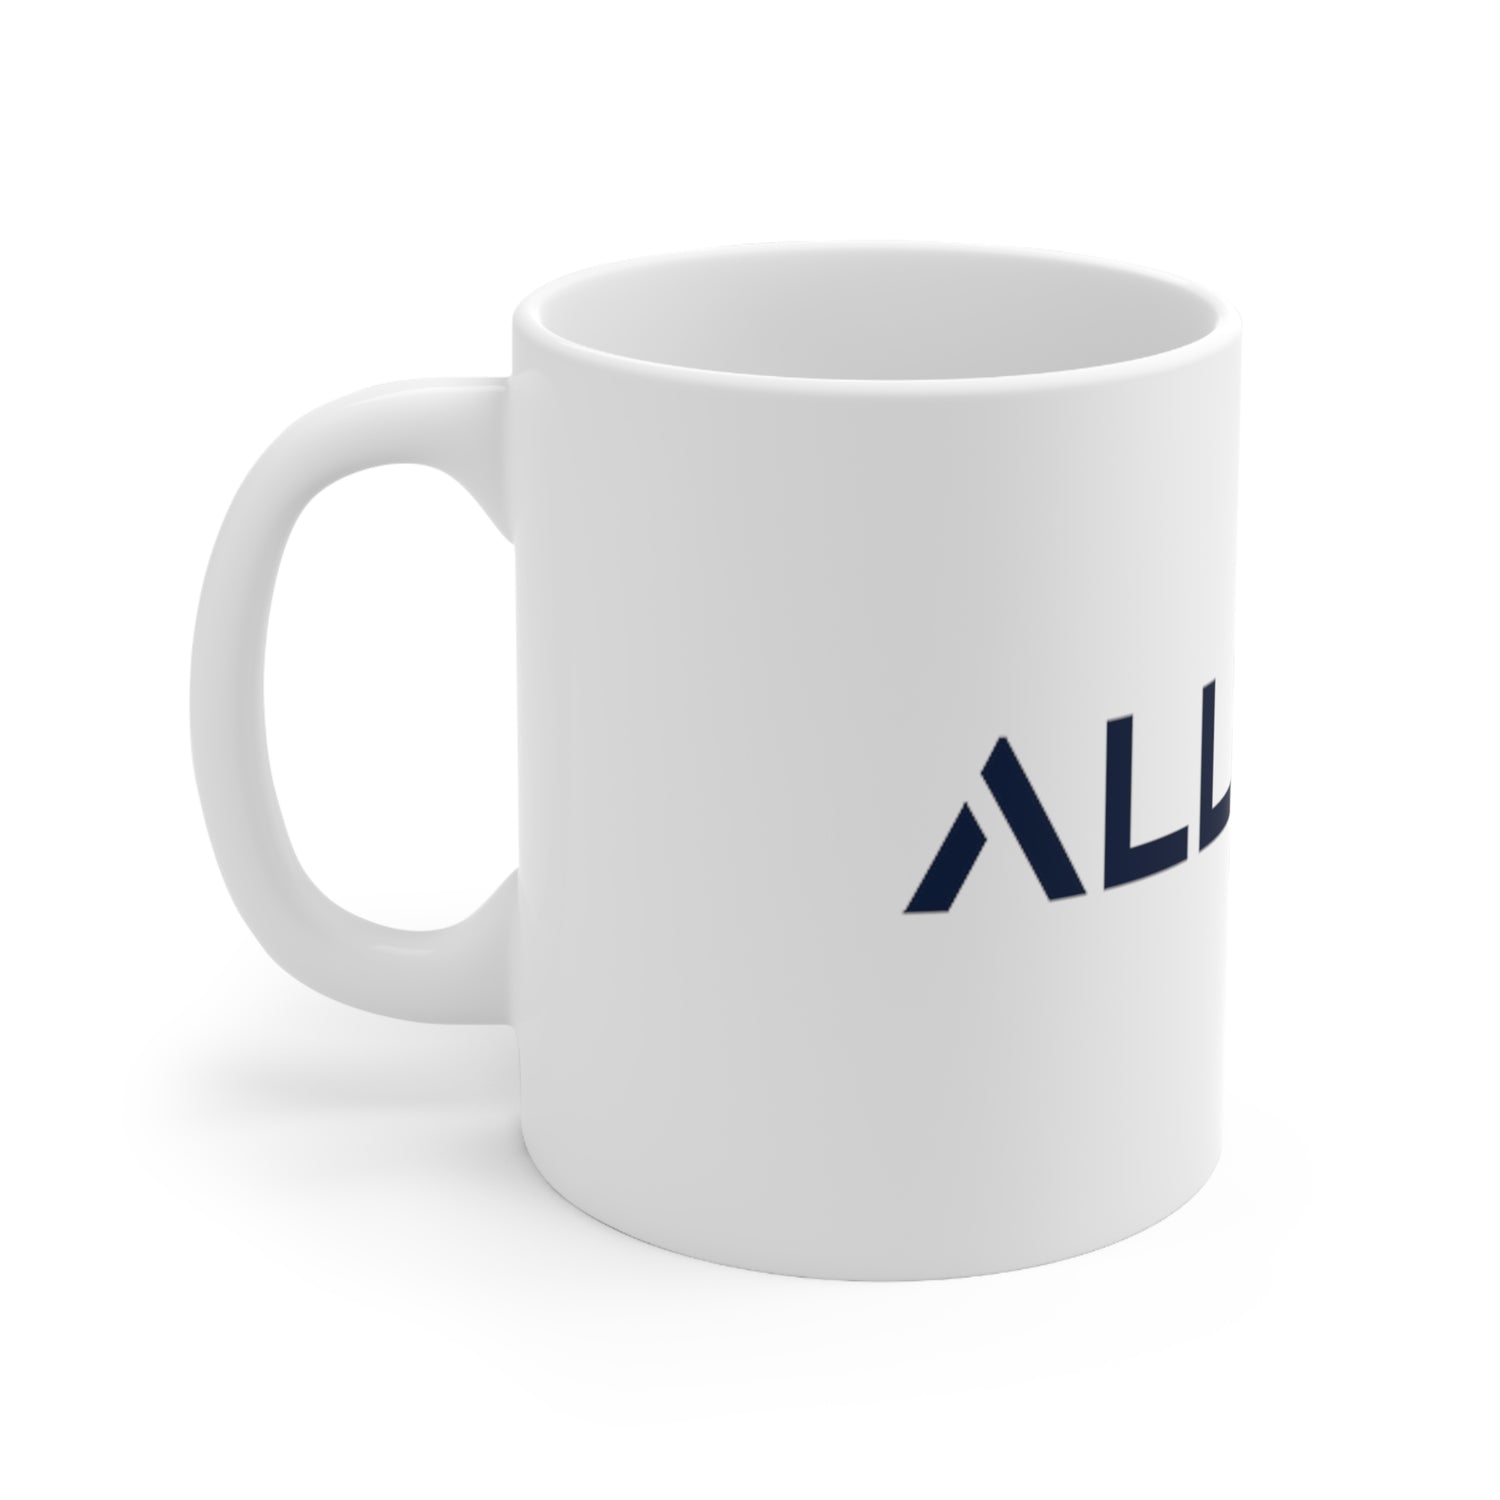 ALLMYNE Coffee Mug 11oz